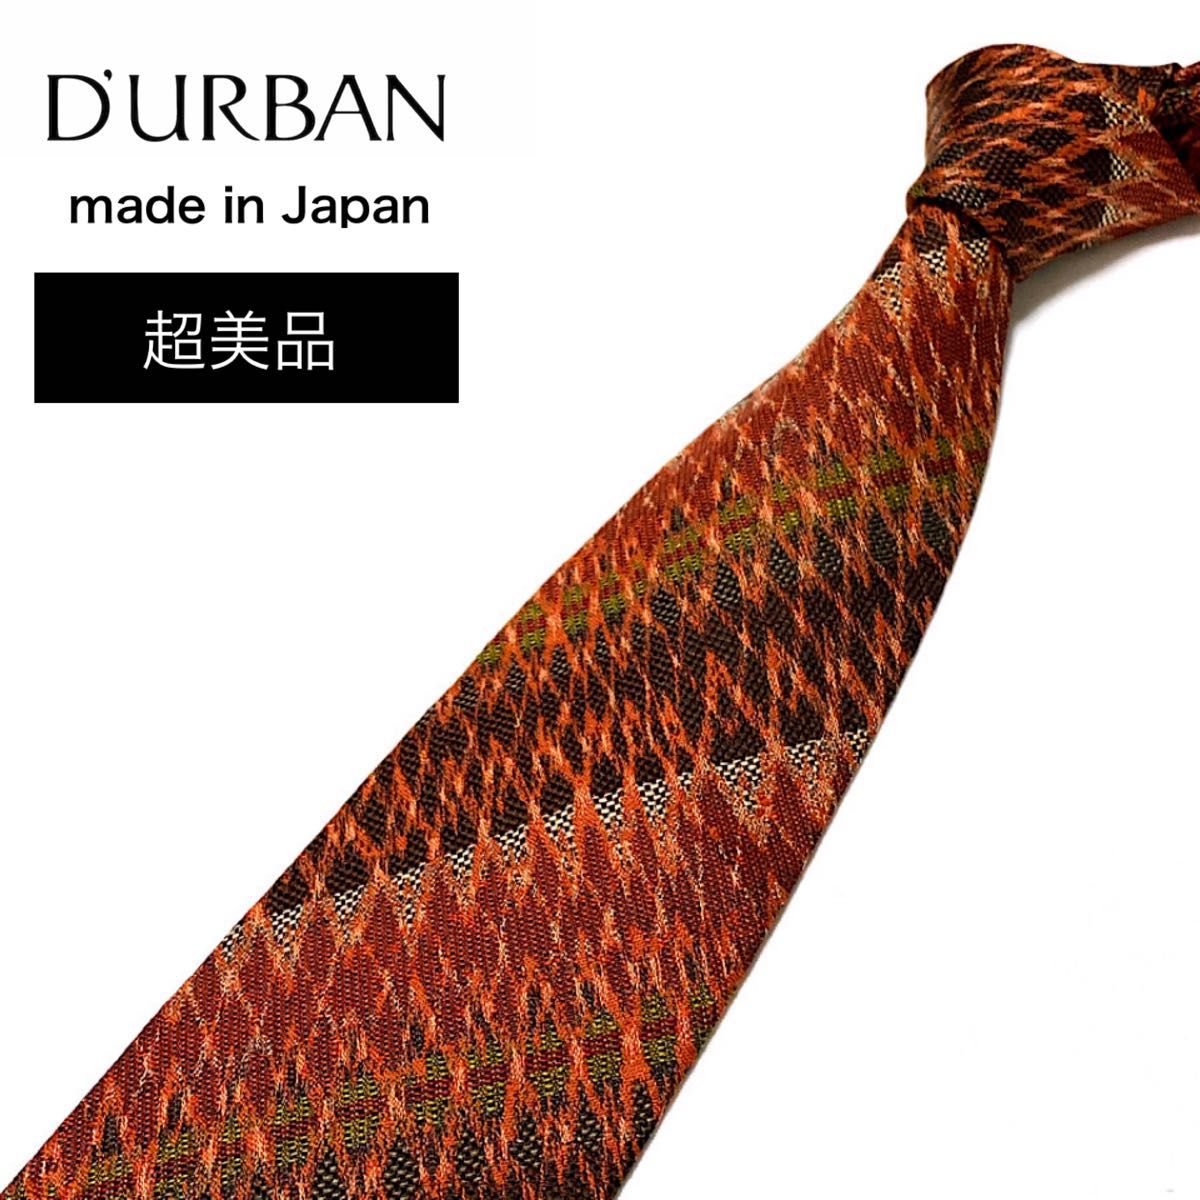 【超美品】D'URBAN ダーバン ネクタイ イタリア製生地 日本製 ストライプ柄 ブラウン